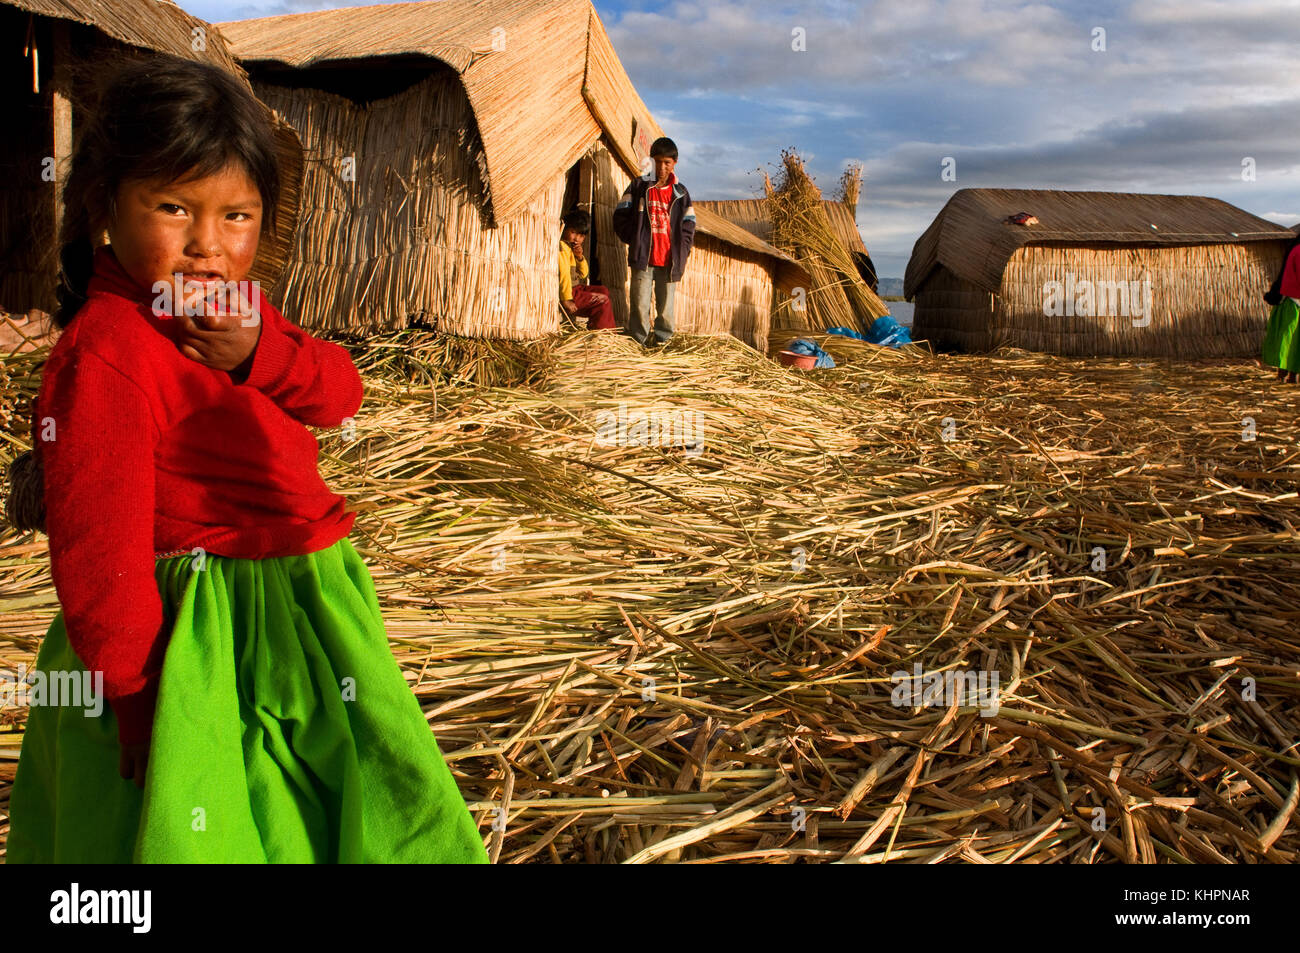 L'île uros, lac Titicaca, Pérou, Amérique du Sud. une fille aymara en costumes traditionnels de la région, composé d'une jupe verte intense et un col Banque D'Images